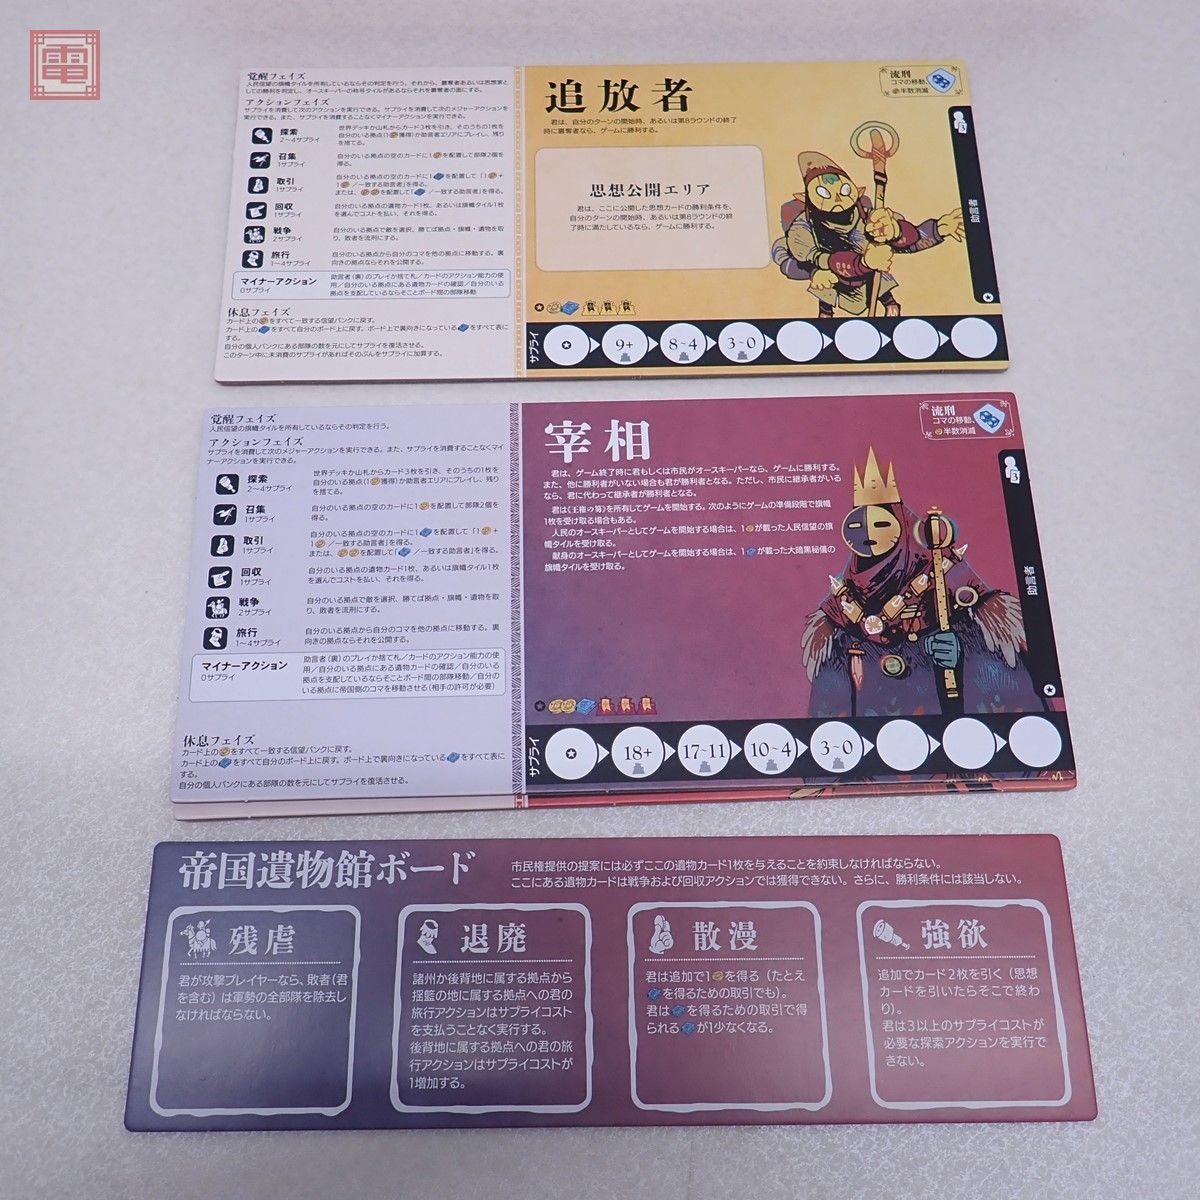 ボードゲーム オース 〜帝国と追放者の年代記〜 完全日本語版 Oath